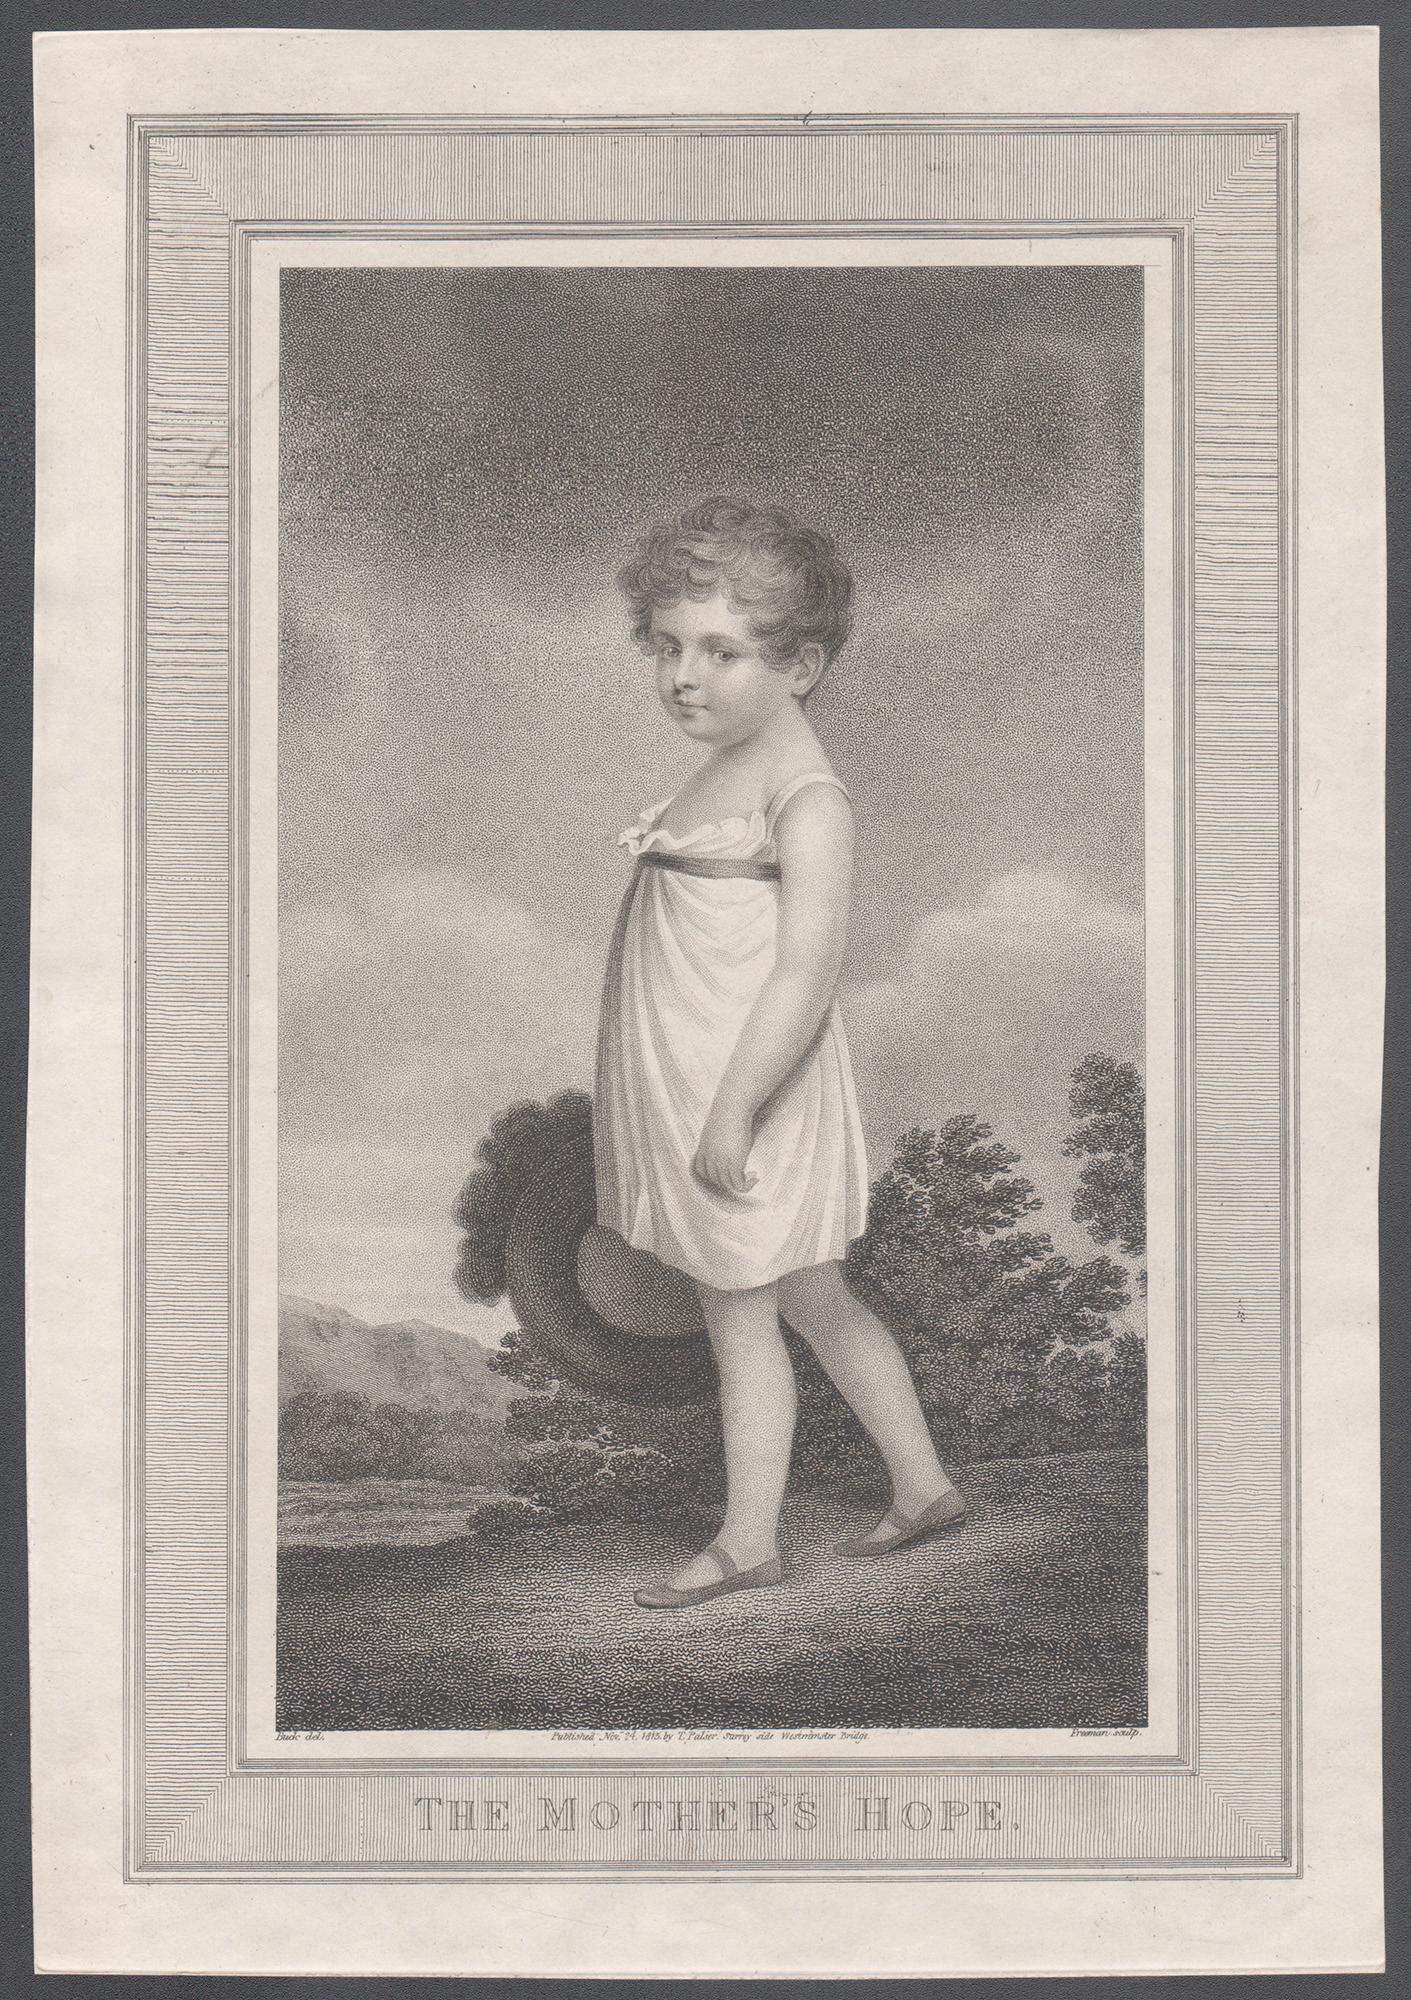 The Mother's Hope, Regency-Stipendium-Porträtstichestiche im Regency-Stil, 1815 – Print von Pieter de Jode II after Anselmus Van Hulle